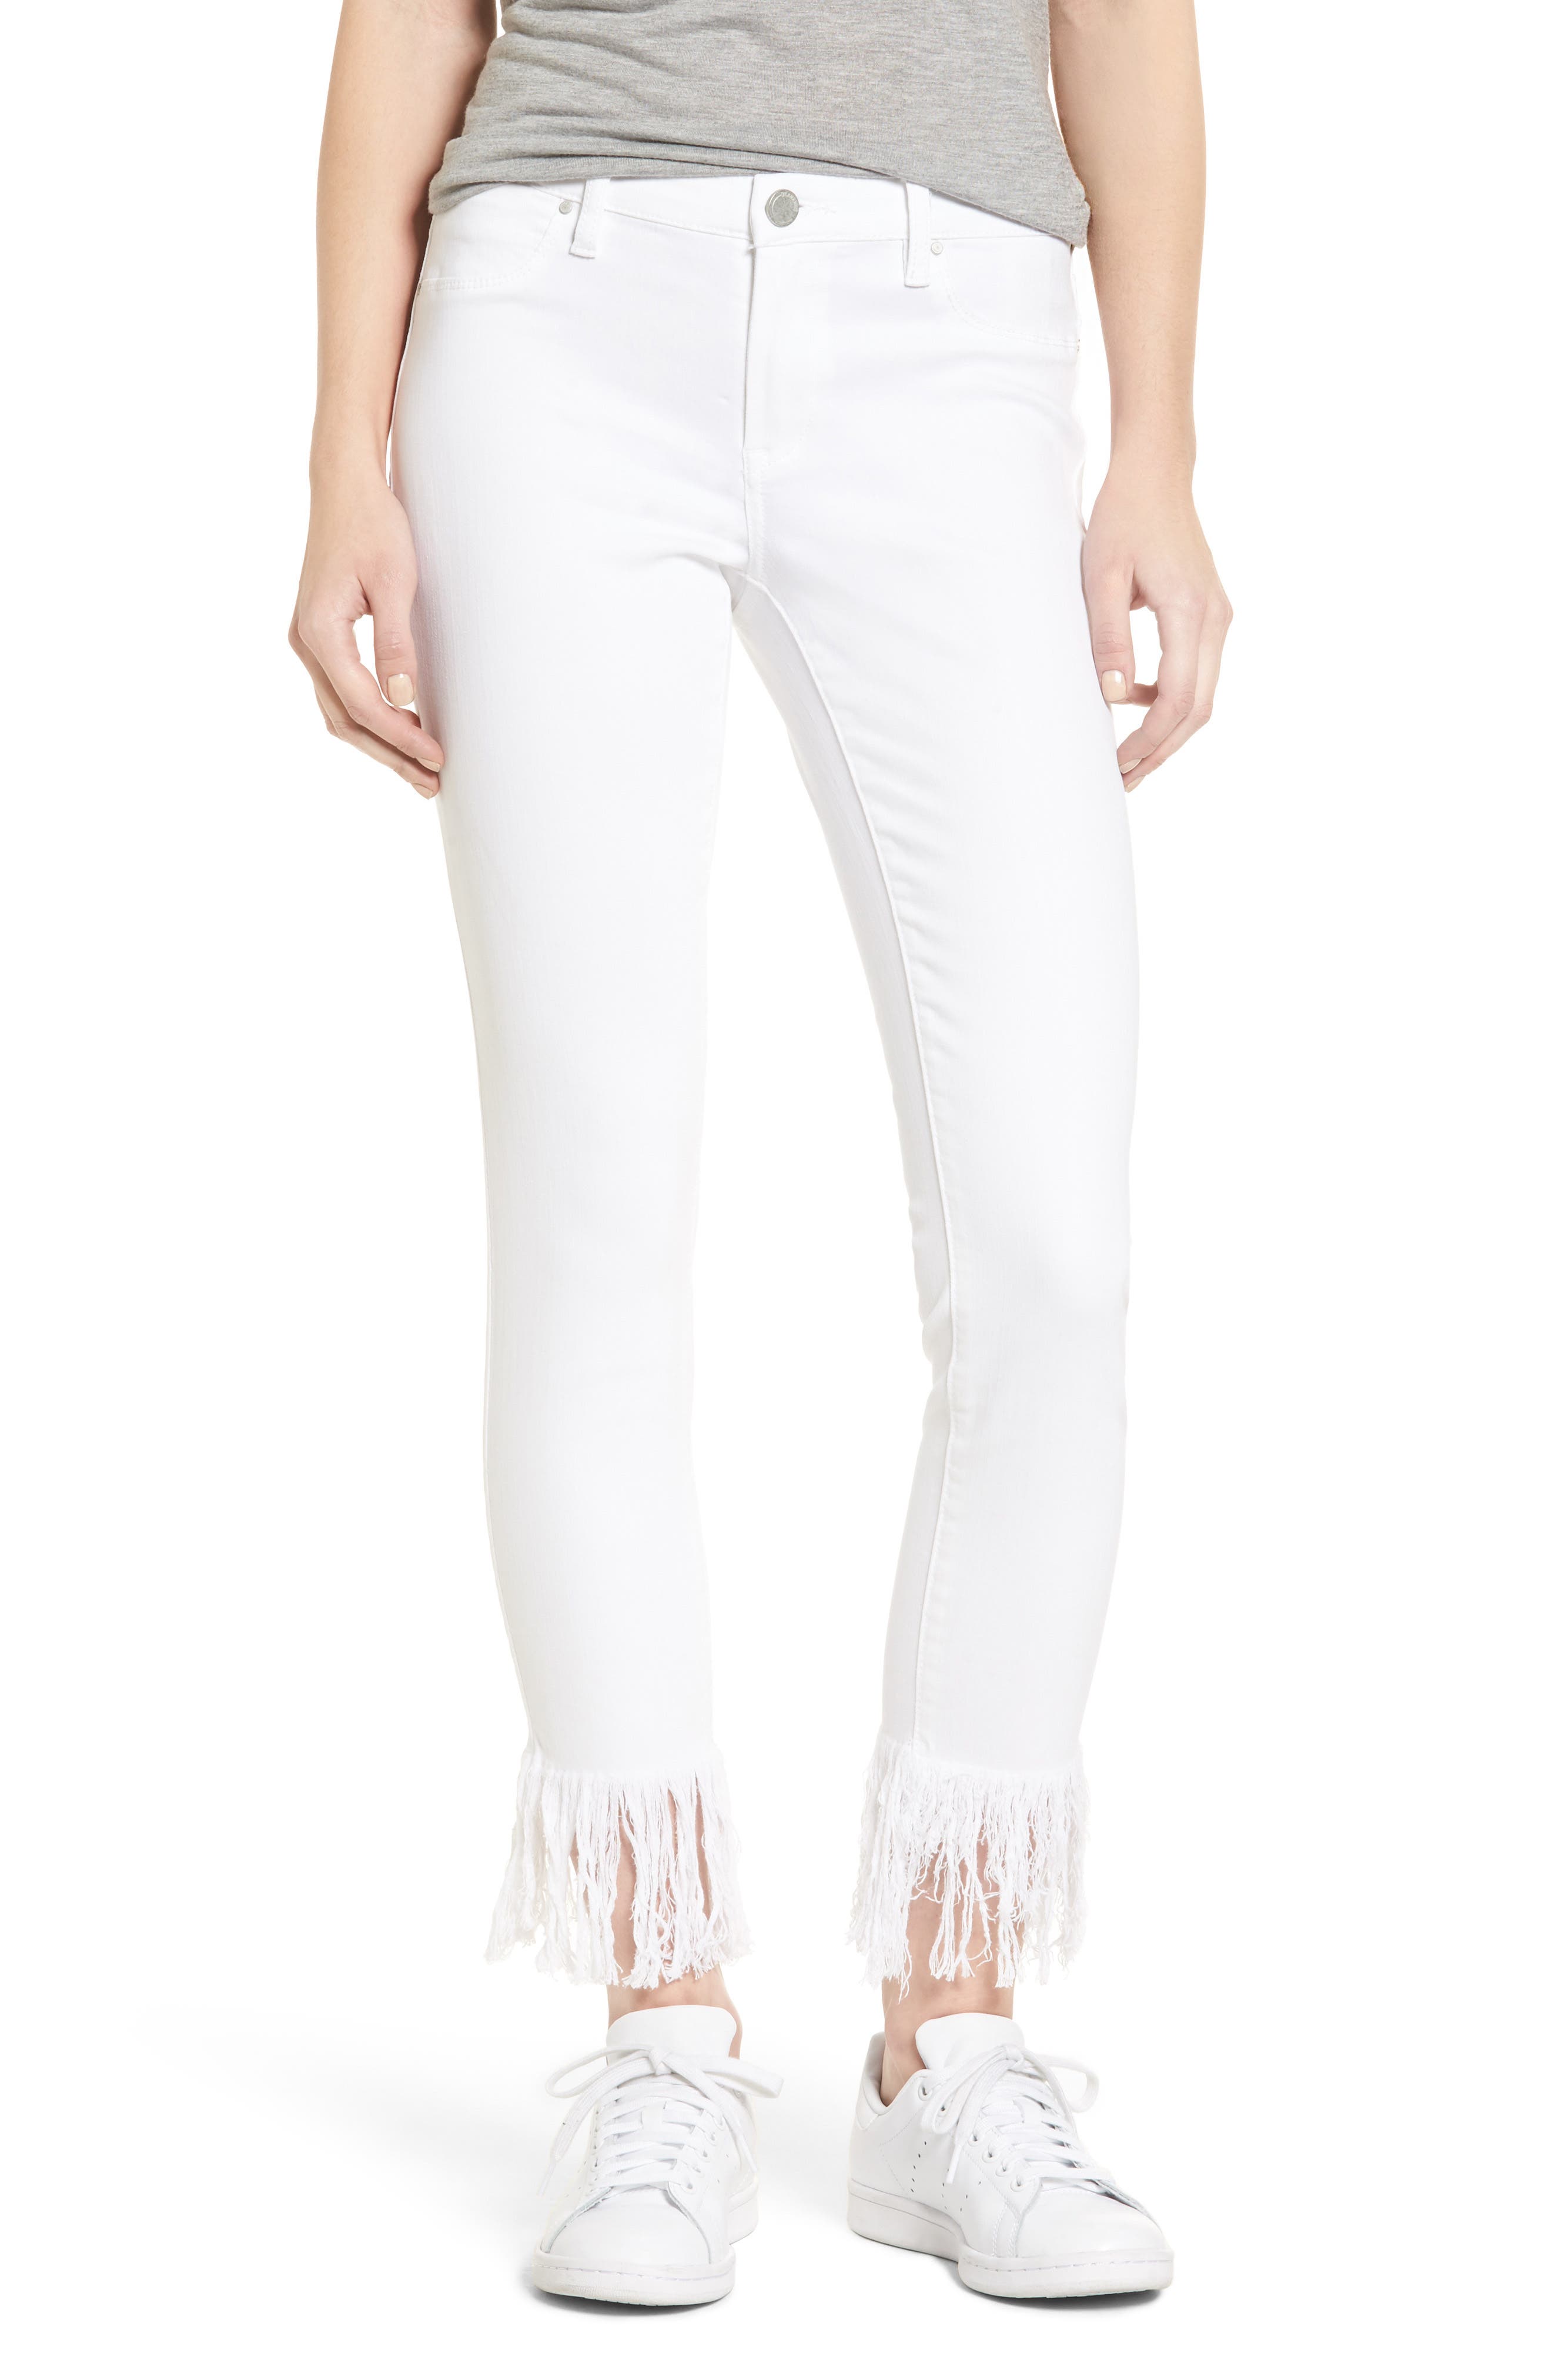 white fringe jeans